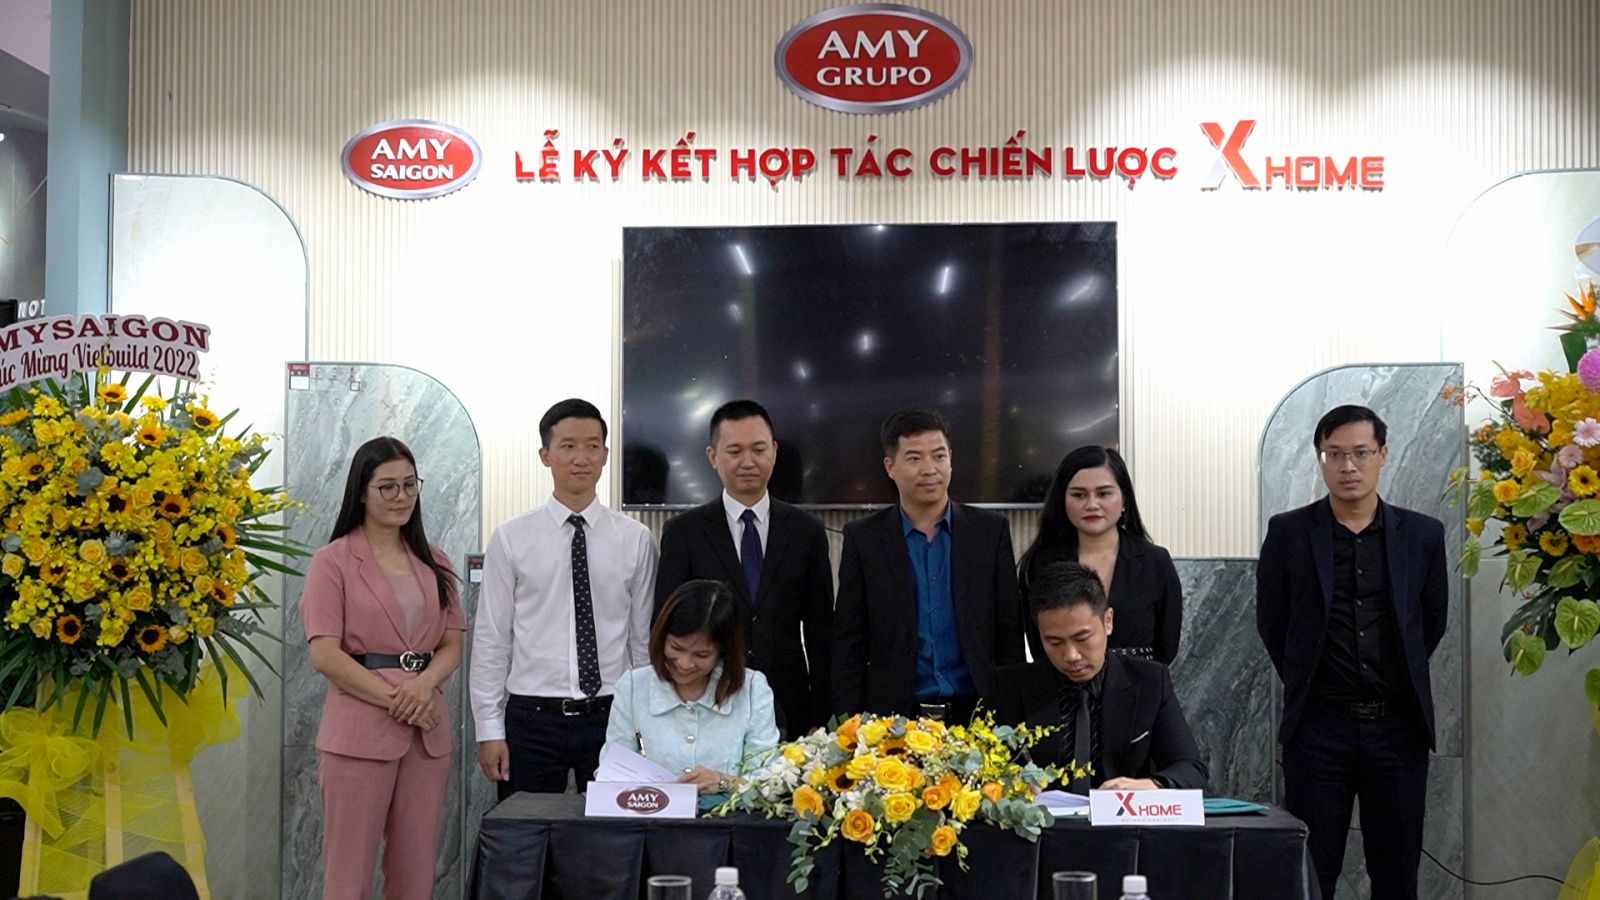 Đại diện Xhome Sài Gòn và Amy Sài Gòn ký kết hợp tác chiến lược